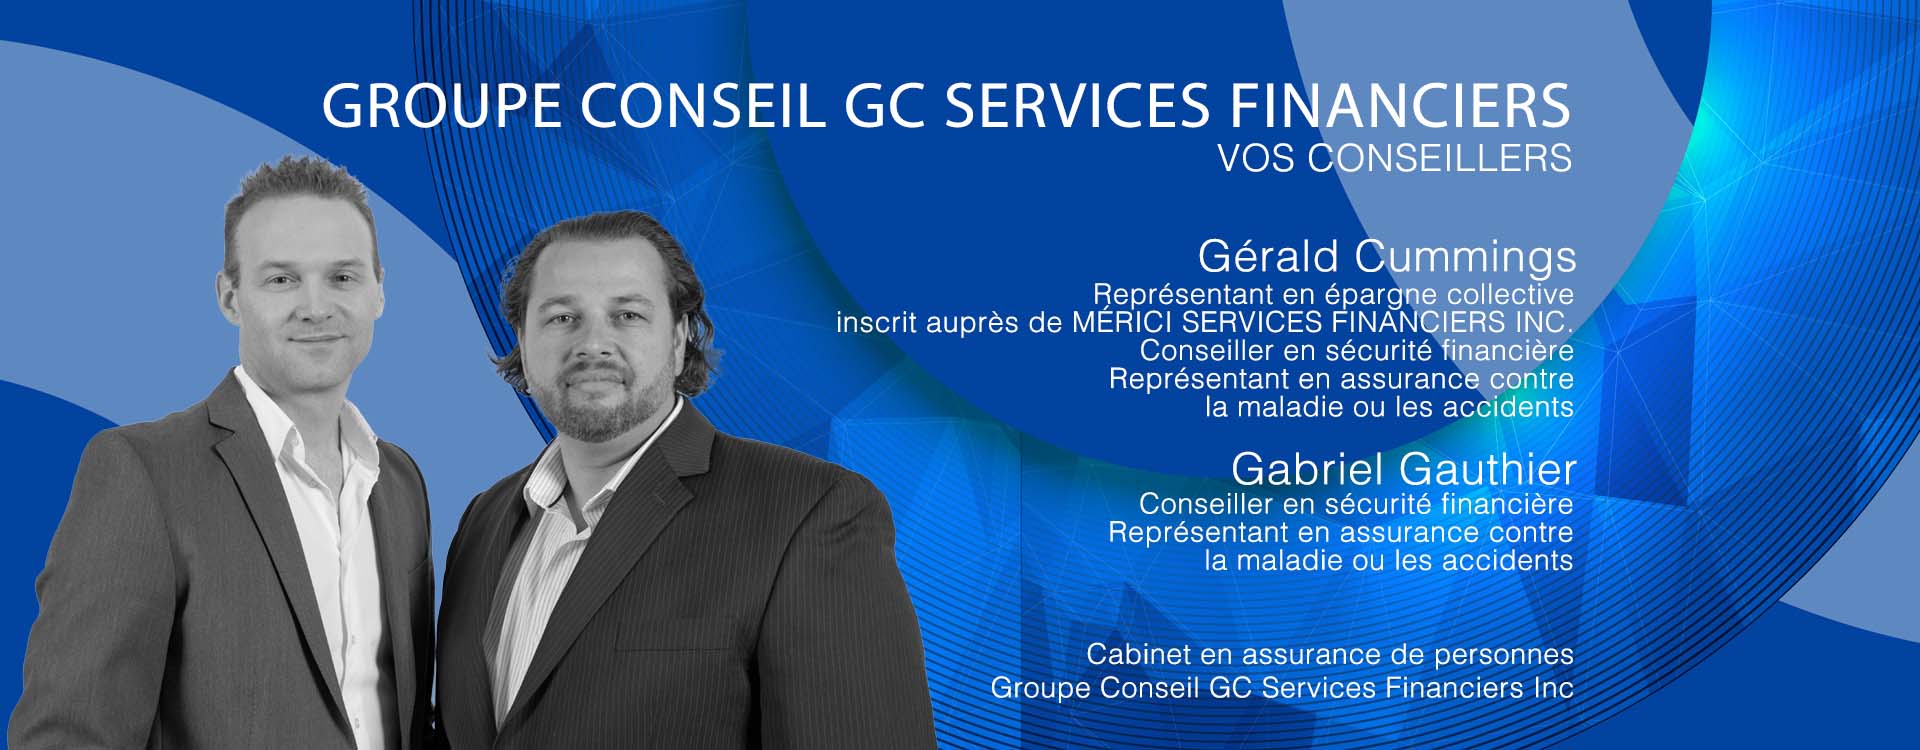 gc-services-financier-entete